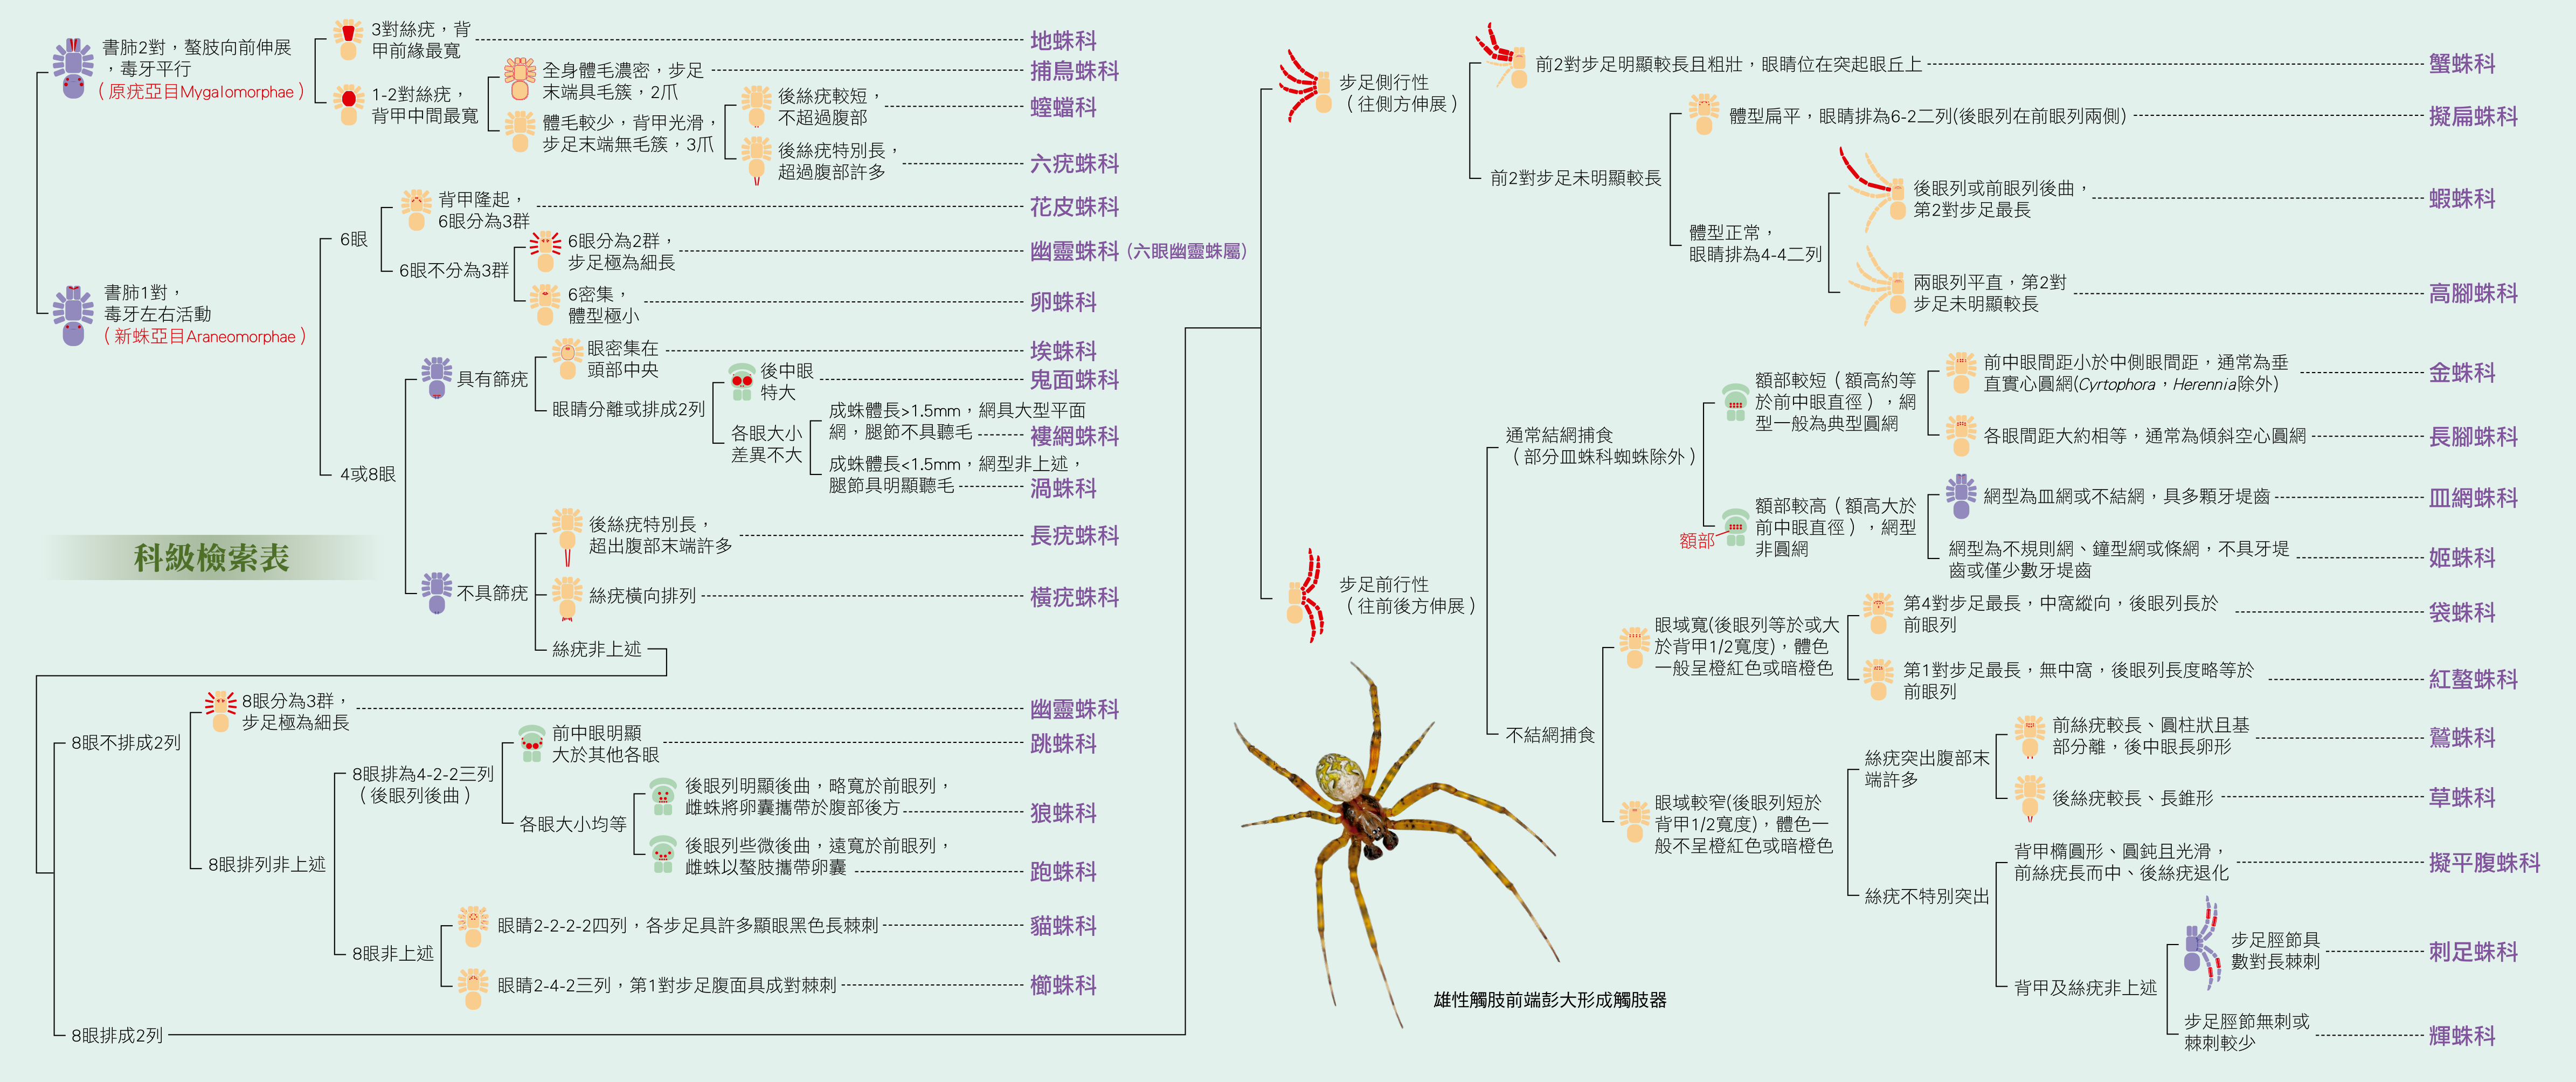 臺灣常見蜘蛛科級檢索表截圖